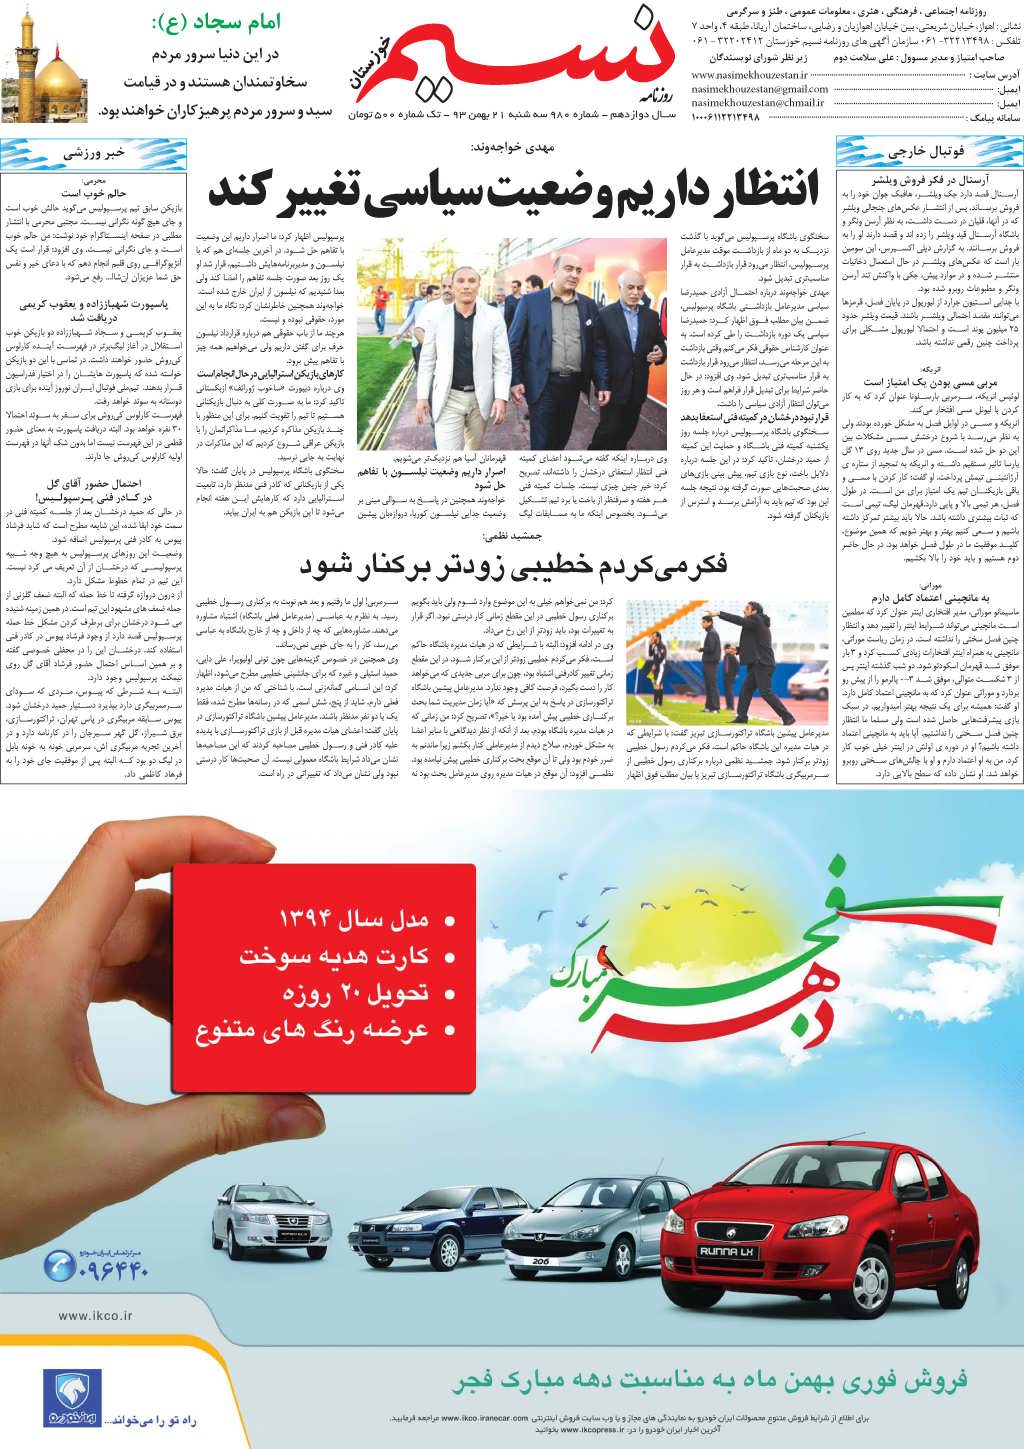 صفحه آخر روزنامه نسیم شماره 980